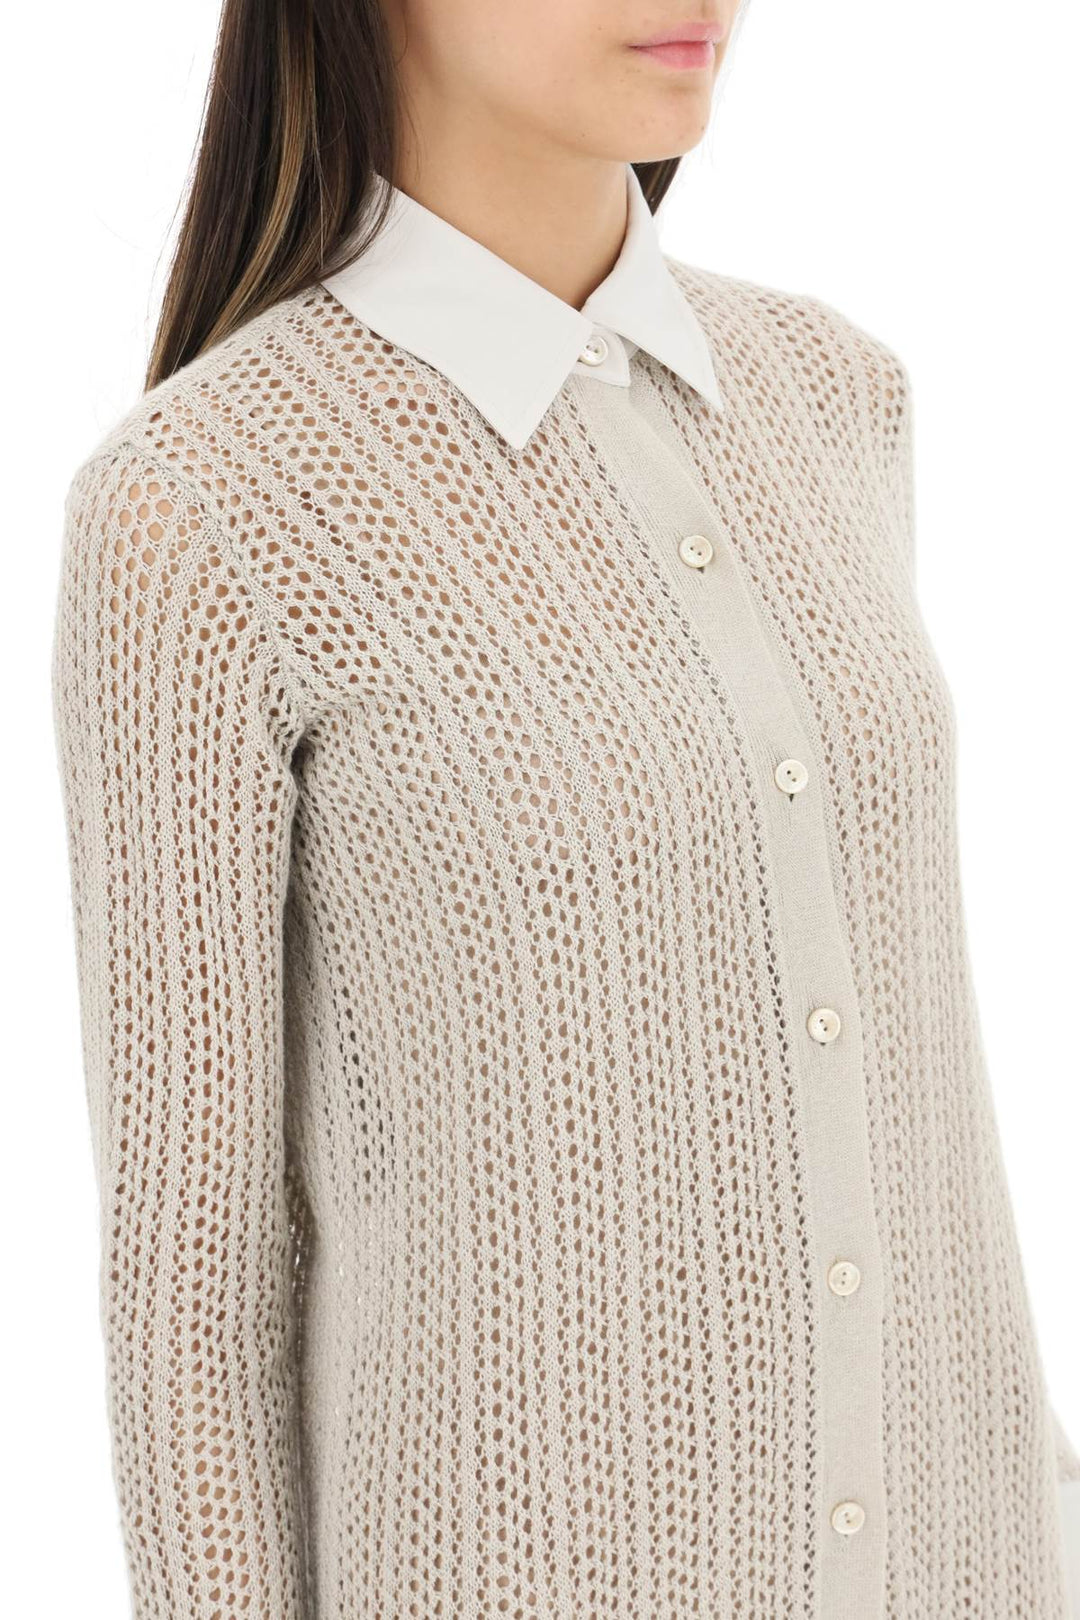 Agnona linen, cashmere and silk knit shirt dress-3